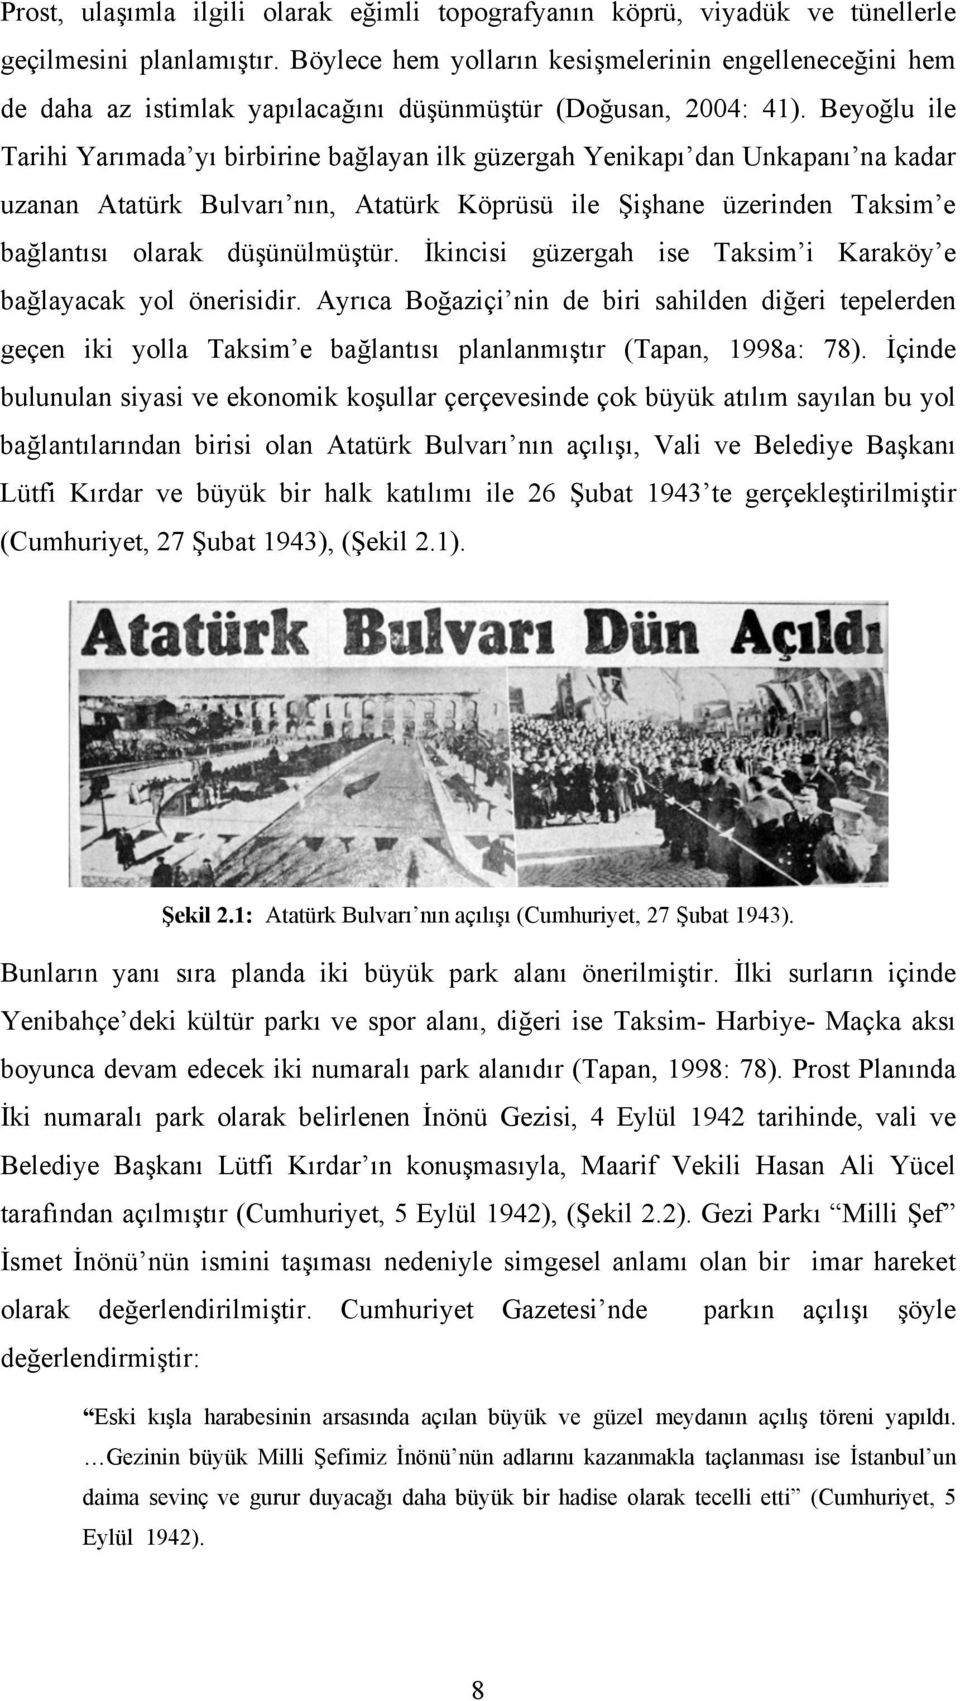 Beyoğlu ile Tarihi Yarımada yı birbirine bağlayan ilk güzergah Yenikapı dan Unkapanı na kadar uzanan Atatürk Bulvarı nın, Atatürk Köprüsü ile Şişhane üzerinden Taksim e bağlantısı olarak